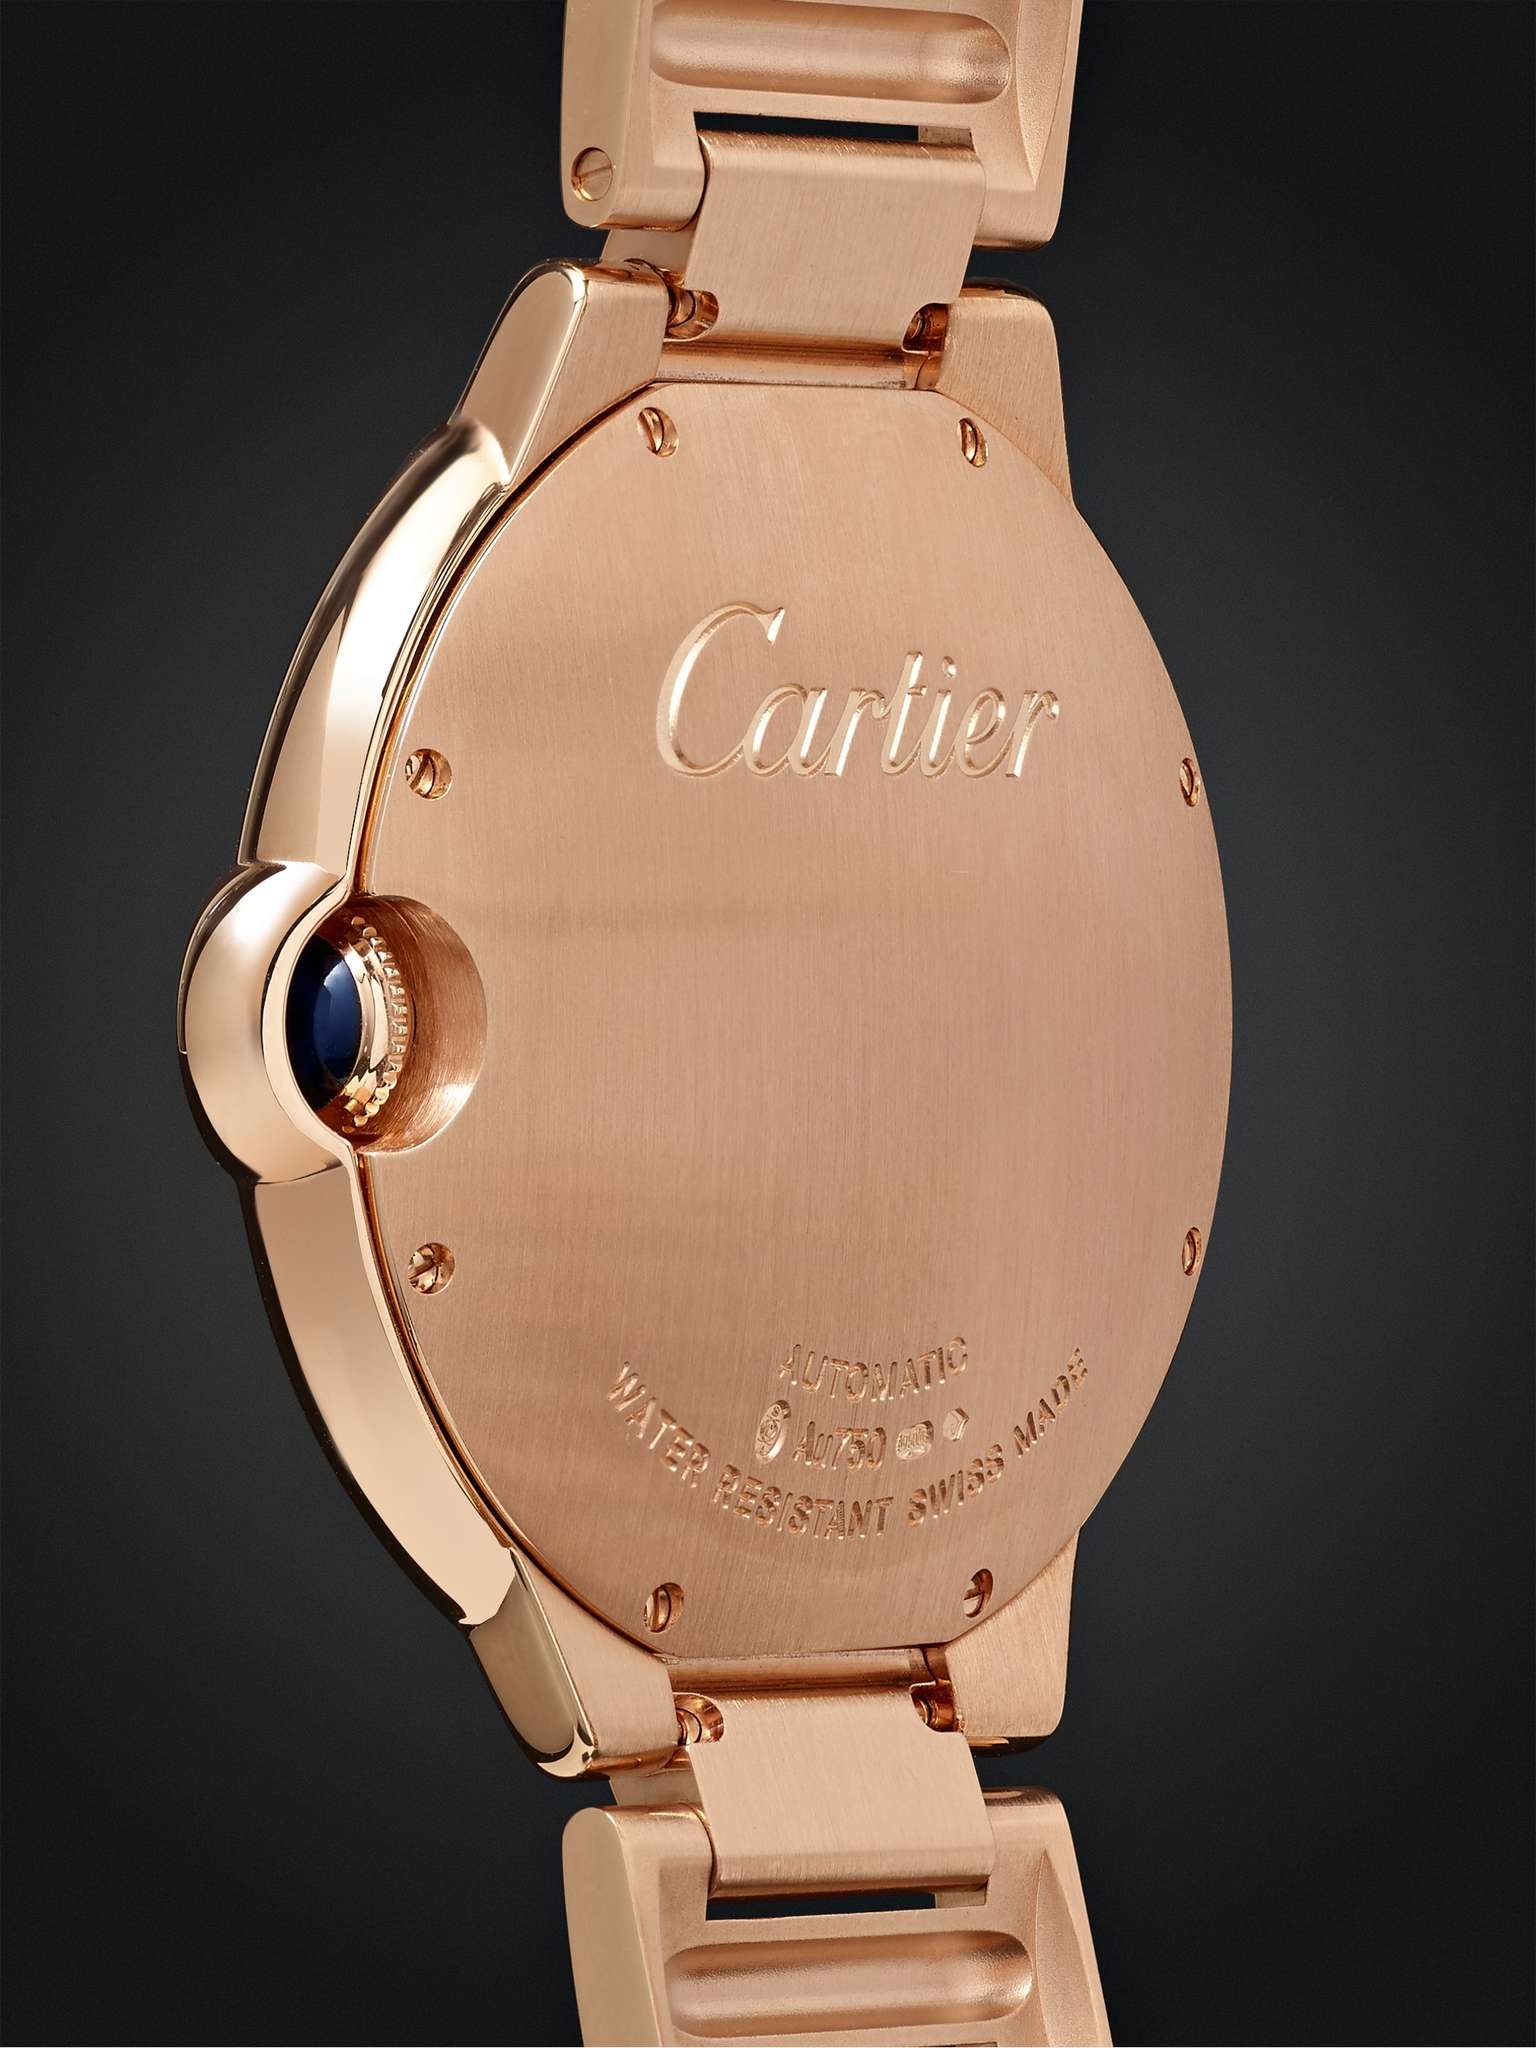 Ballon Bleu de Cartier Automatic 42mm 18-Karat Pink Gold Watch, Ref. No. CRWGBB0016 - 5